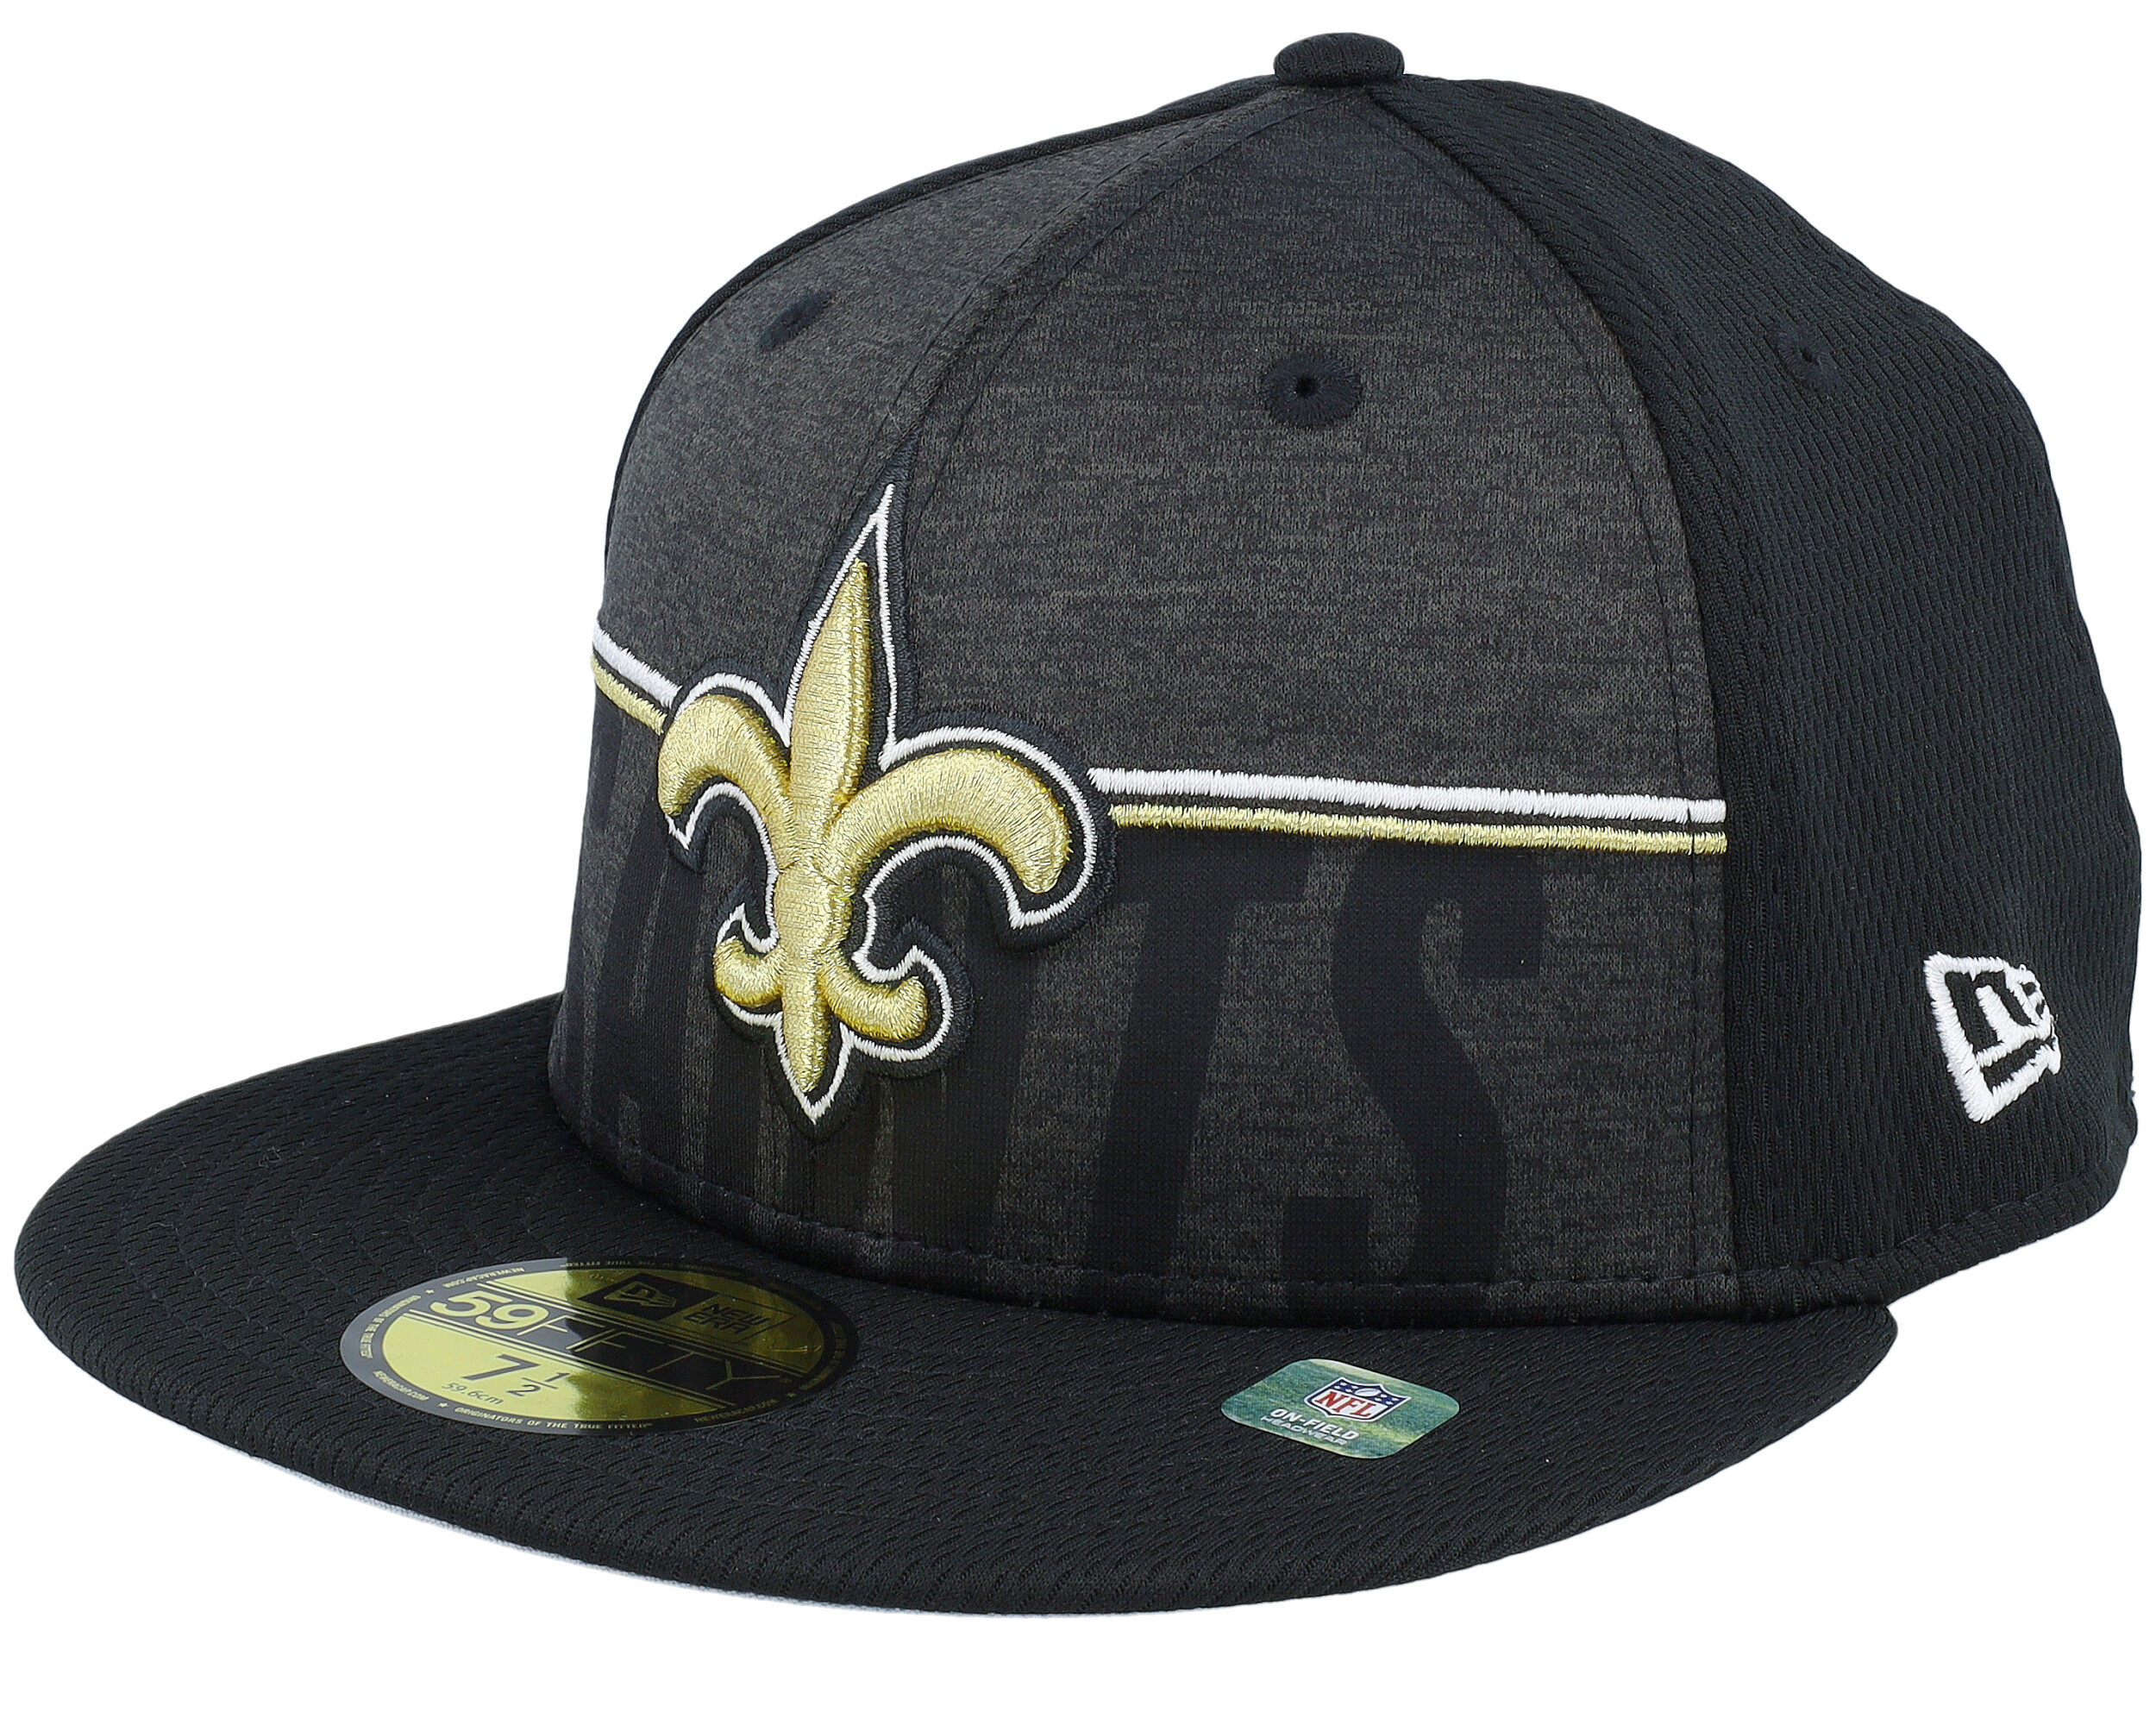 New Orleans Saints black cap